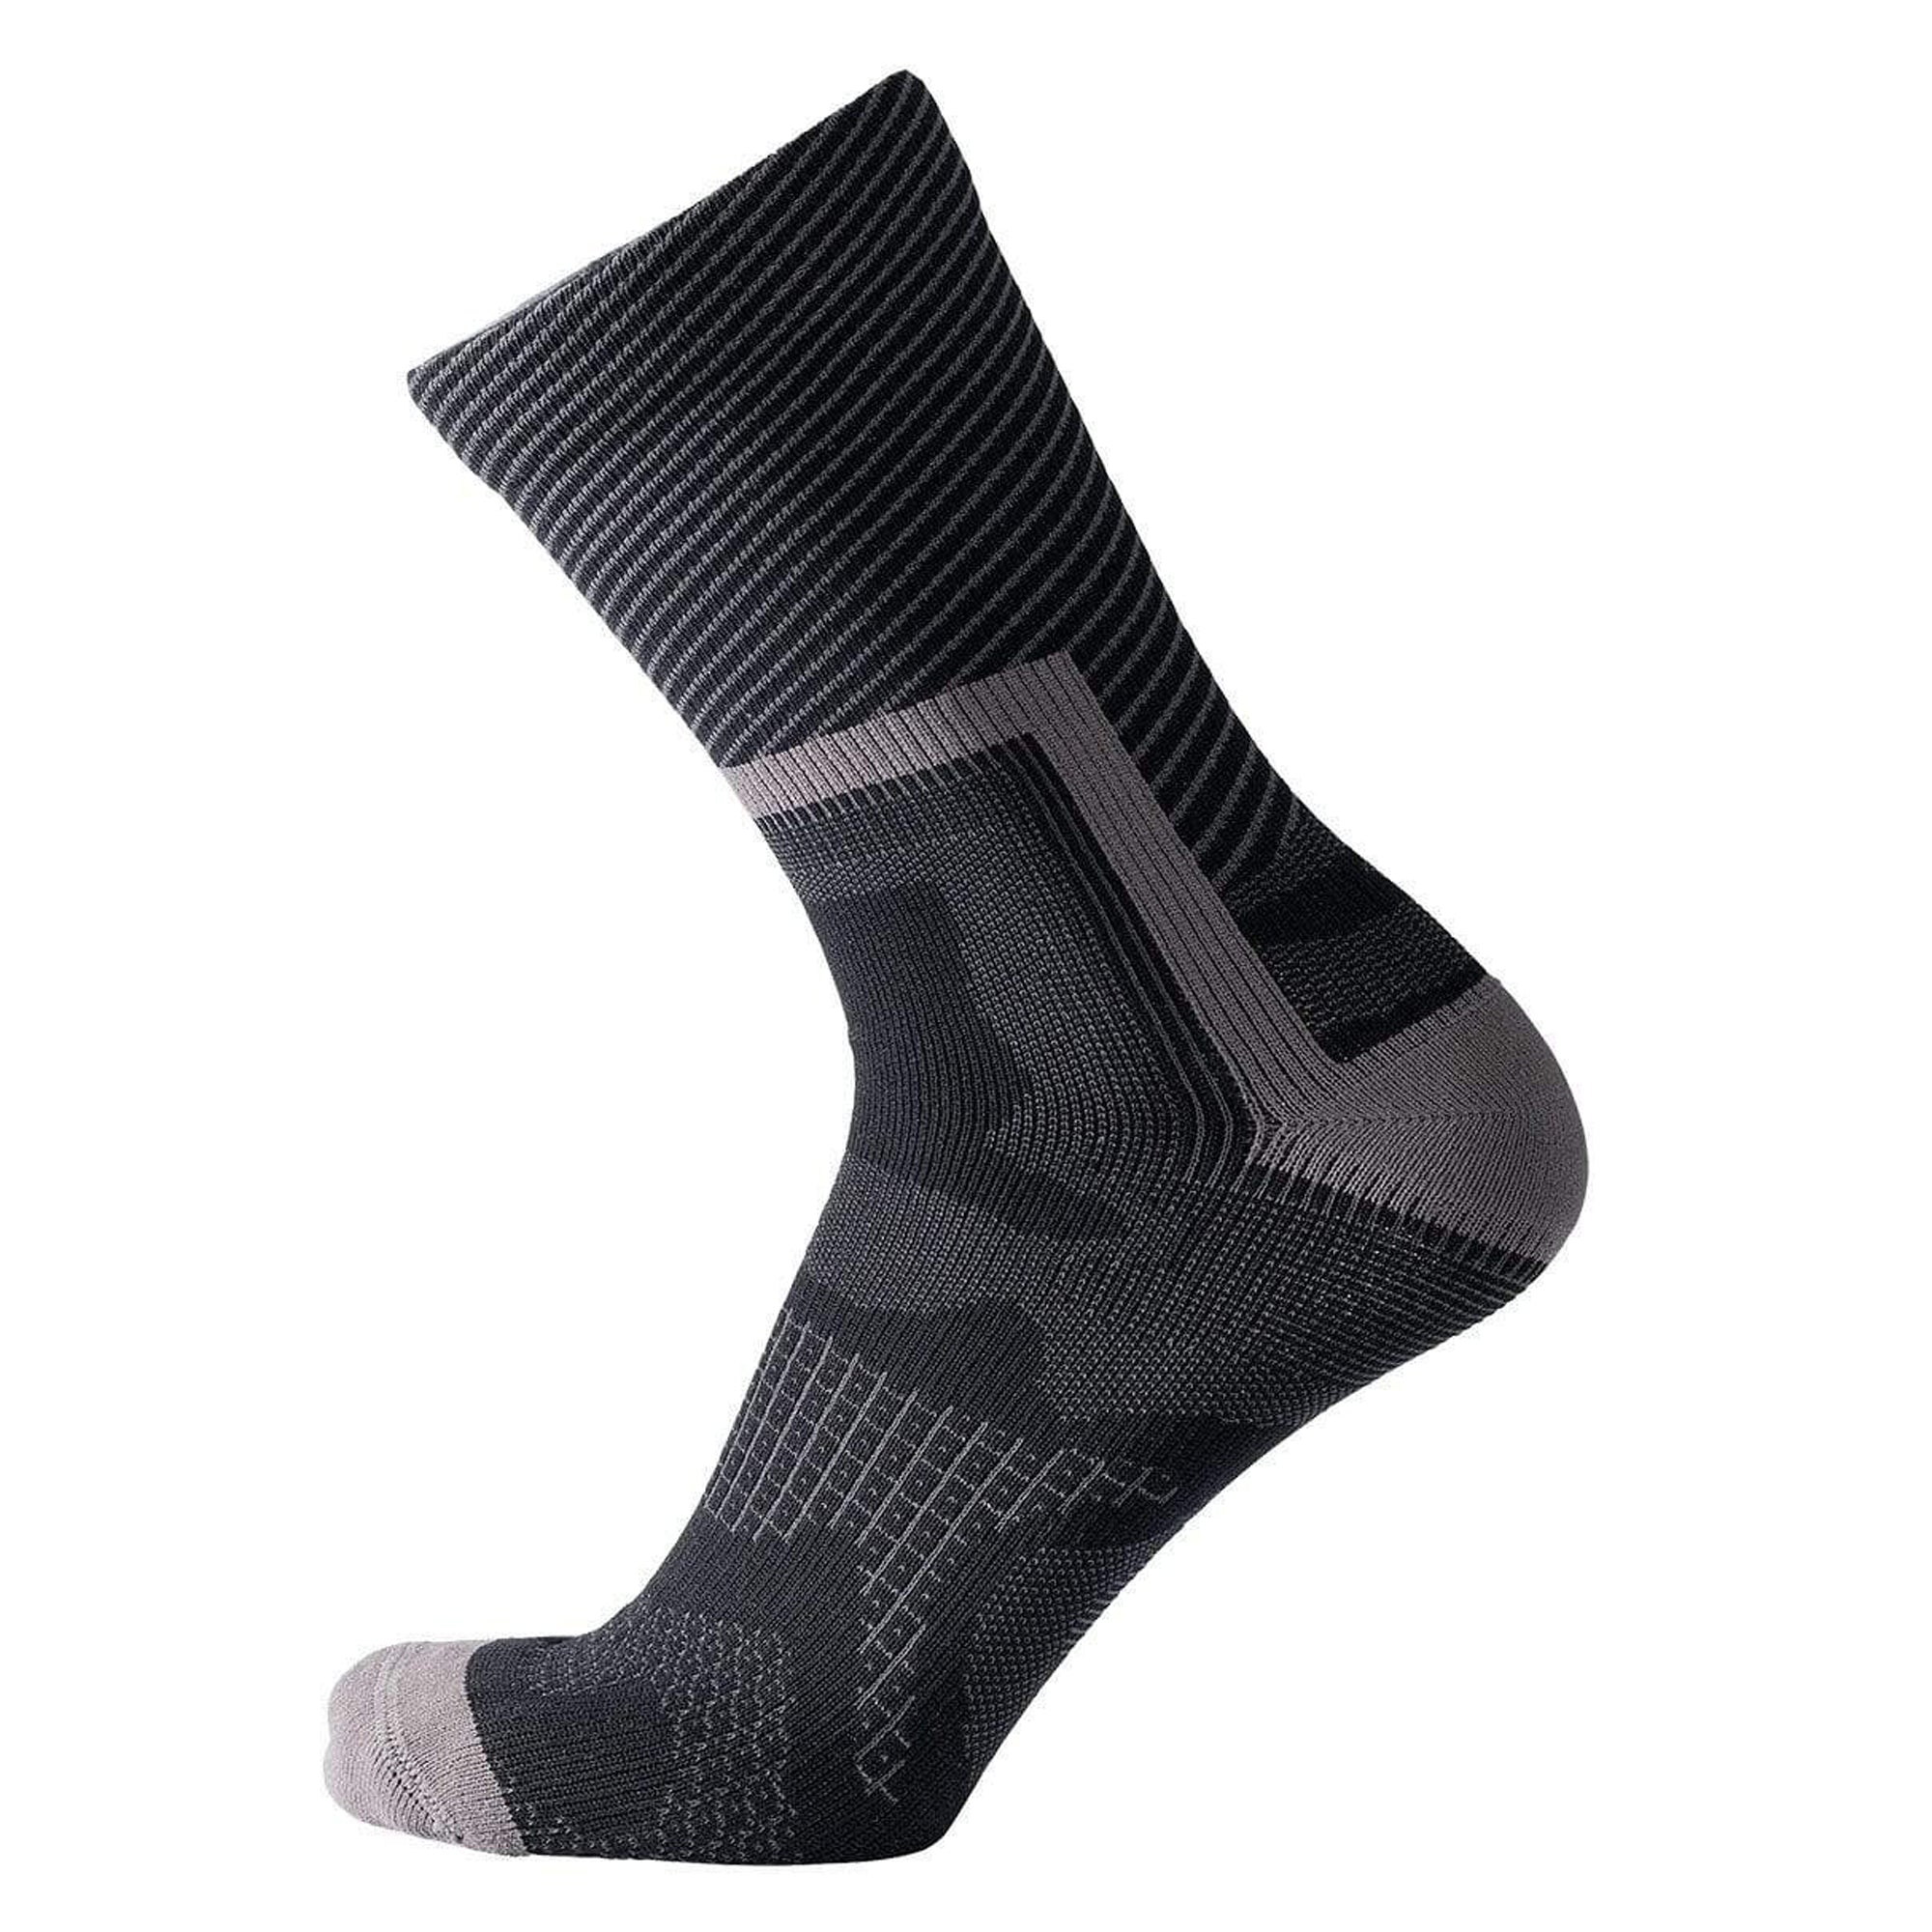 Los calcetines impermeables de 29€ para correr con lluvia